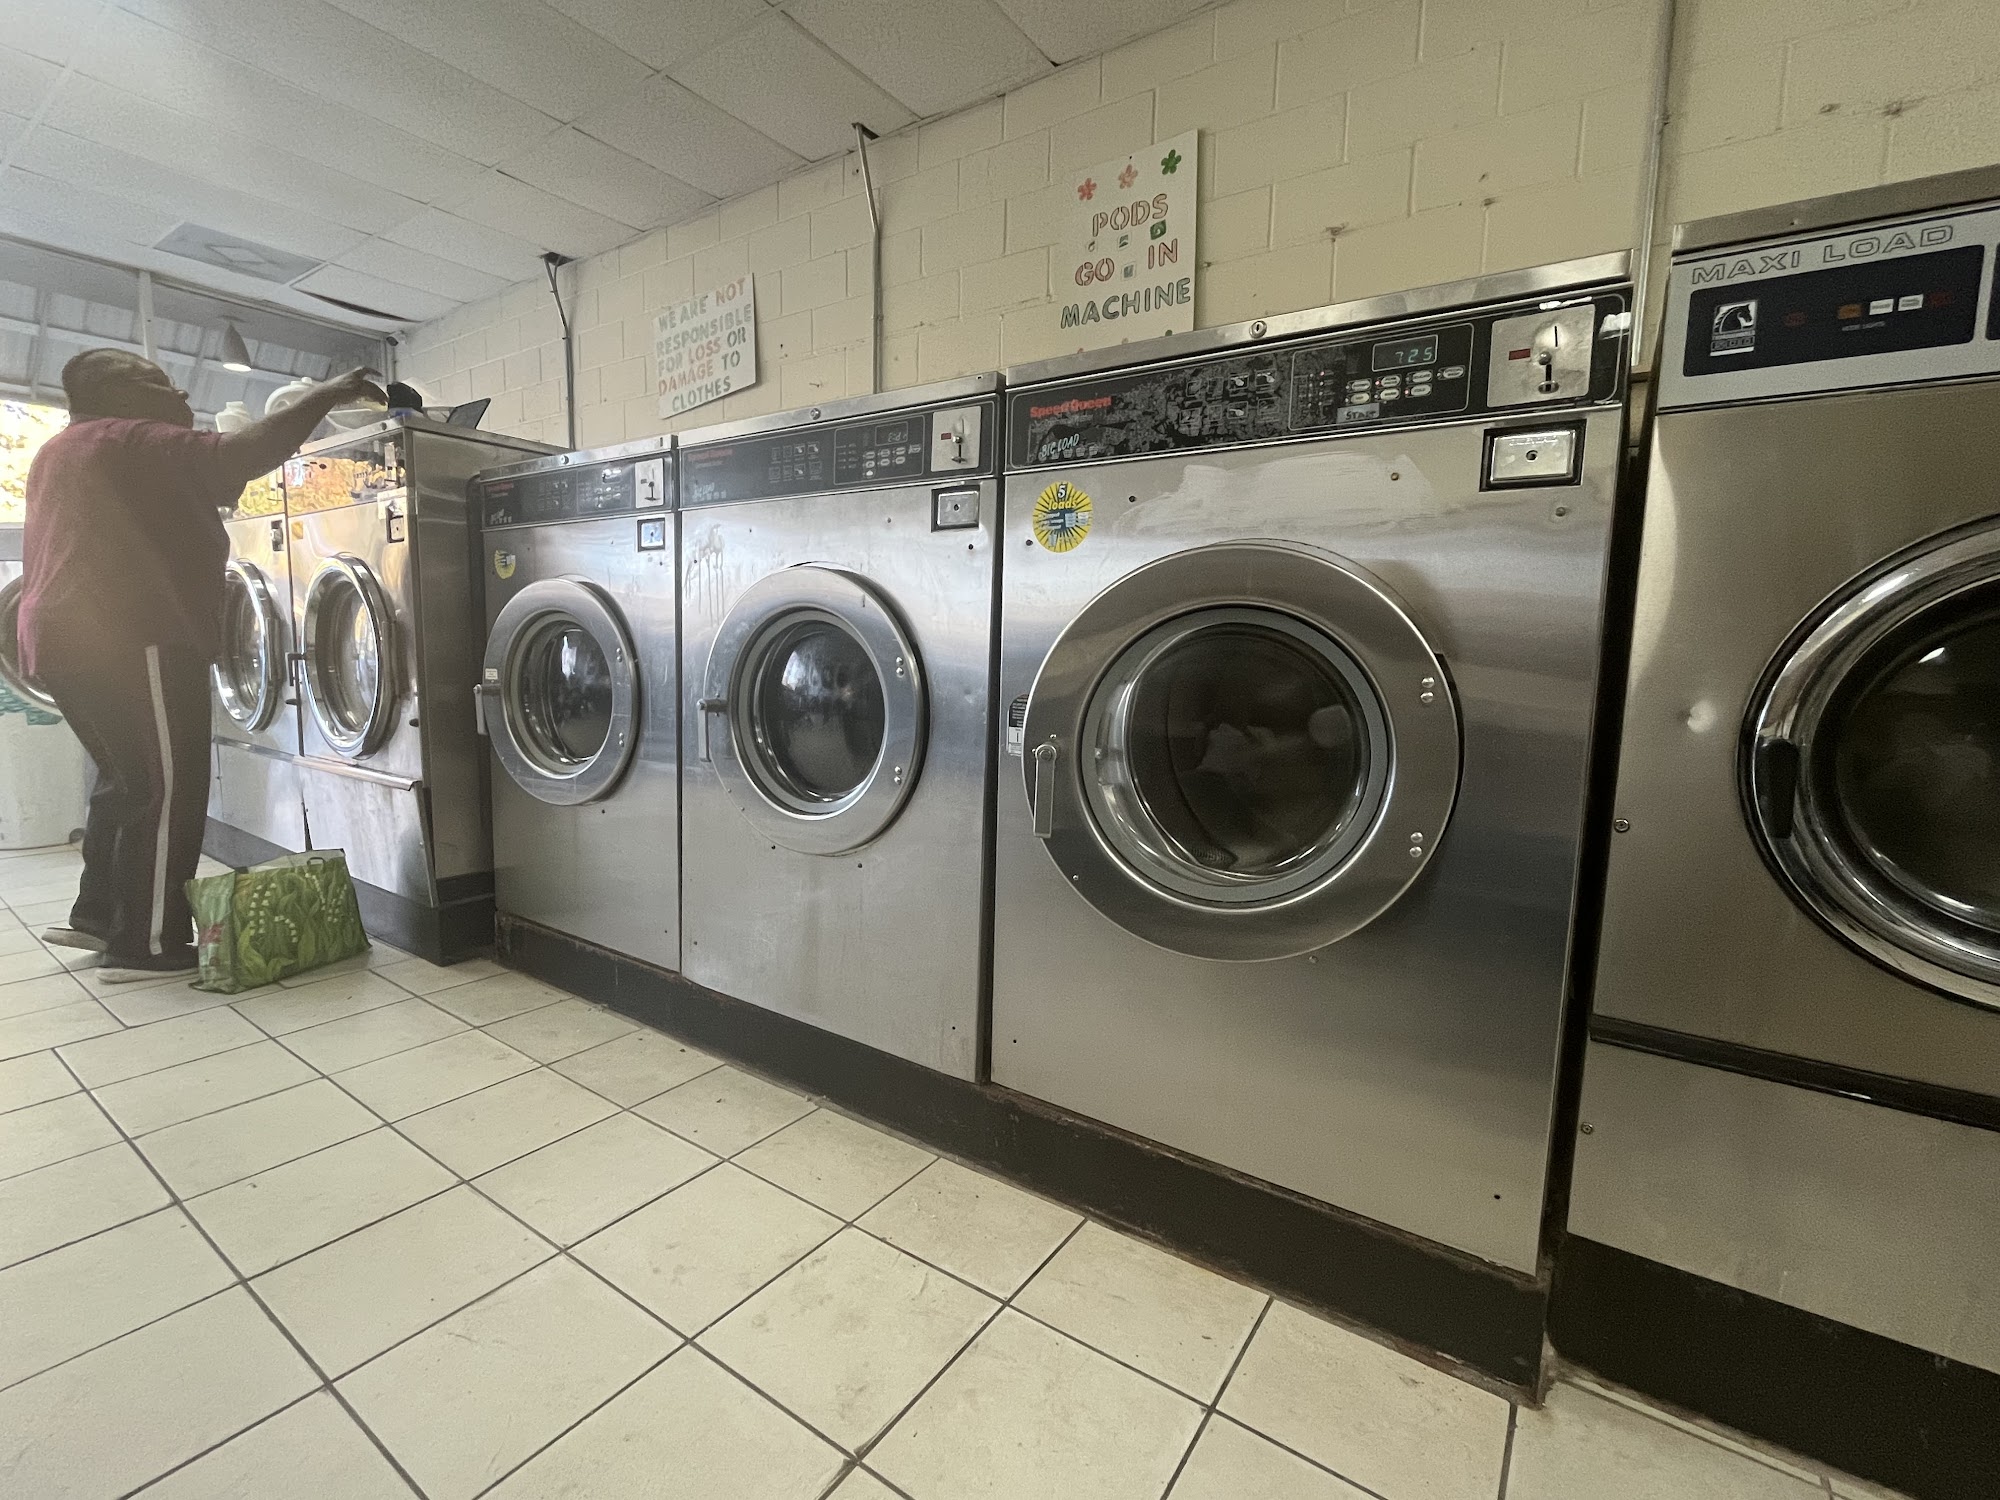 phenix city laundry